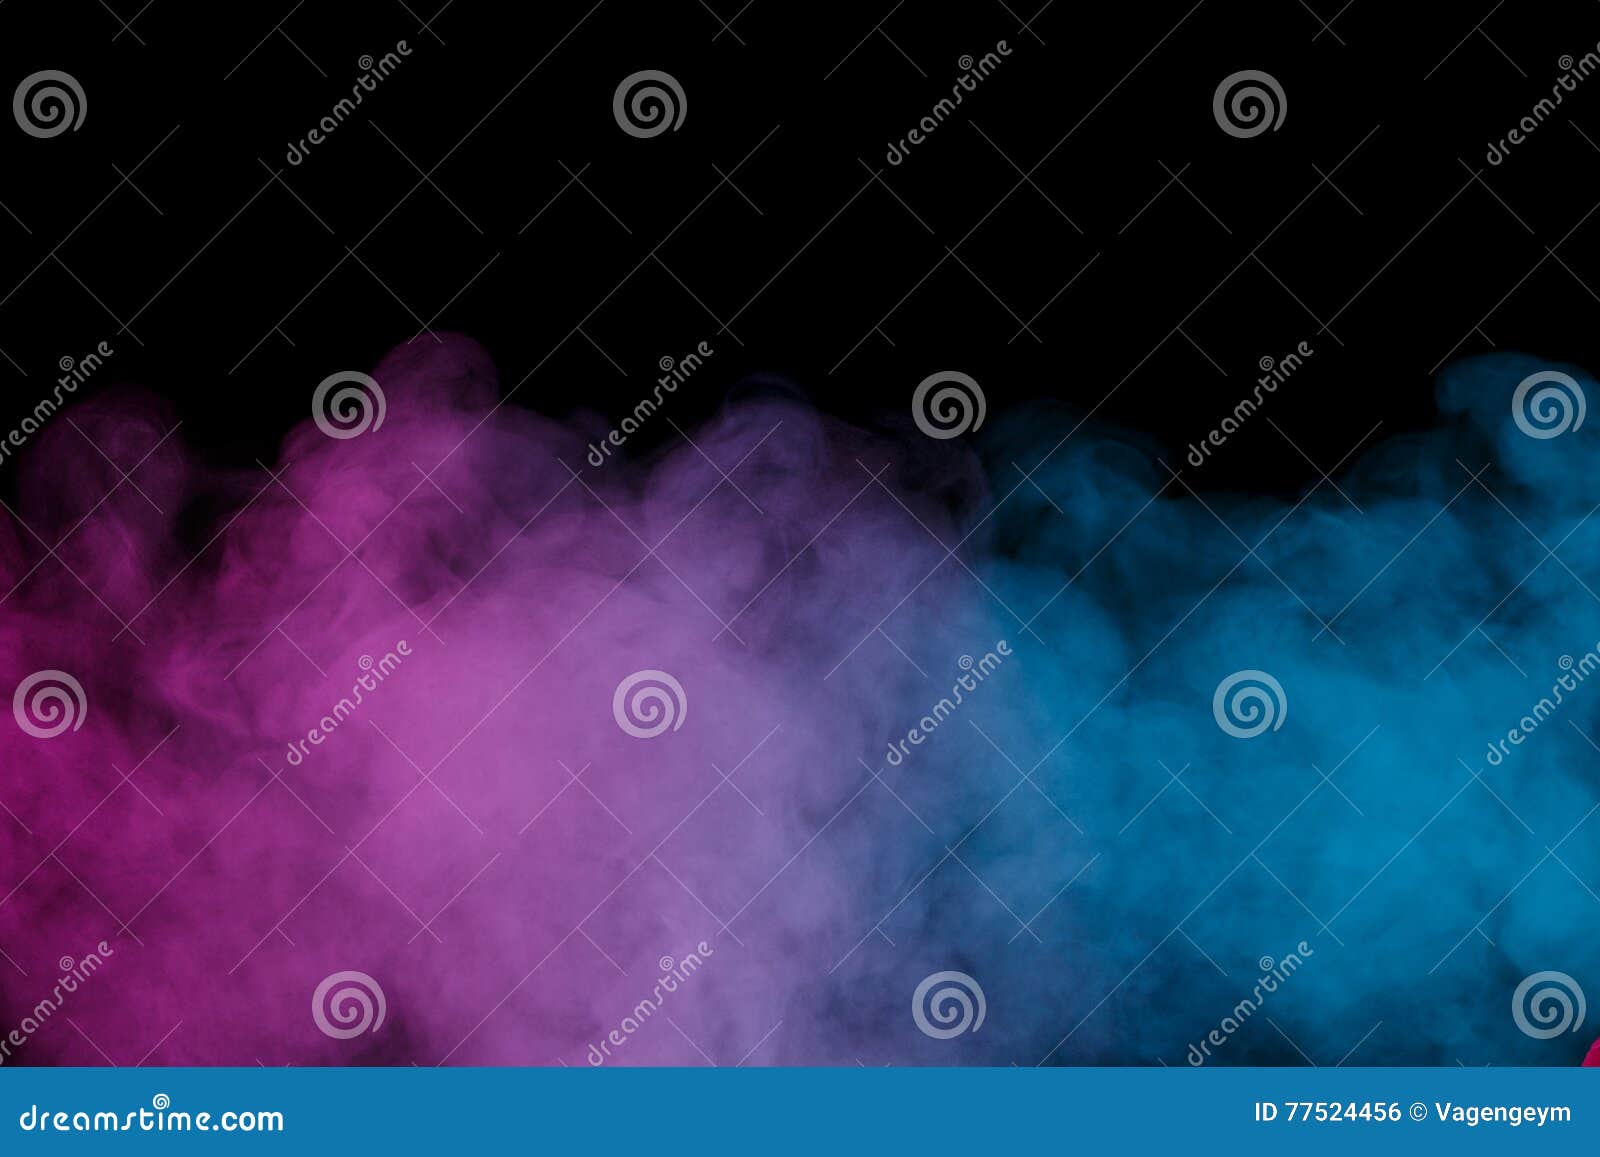 violet blue water vapor